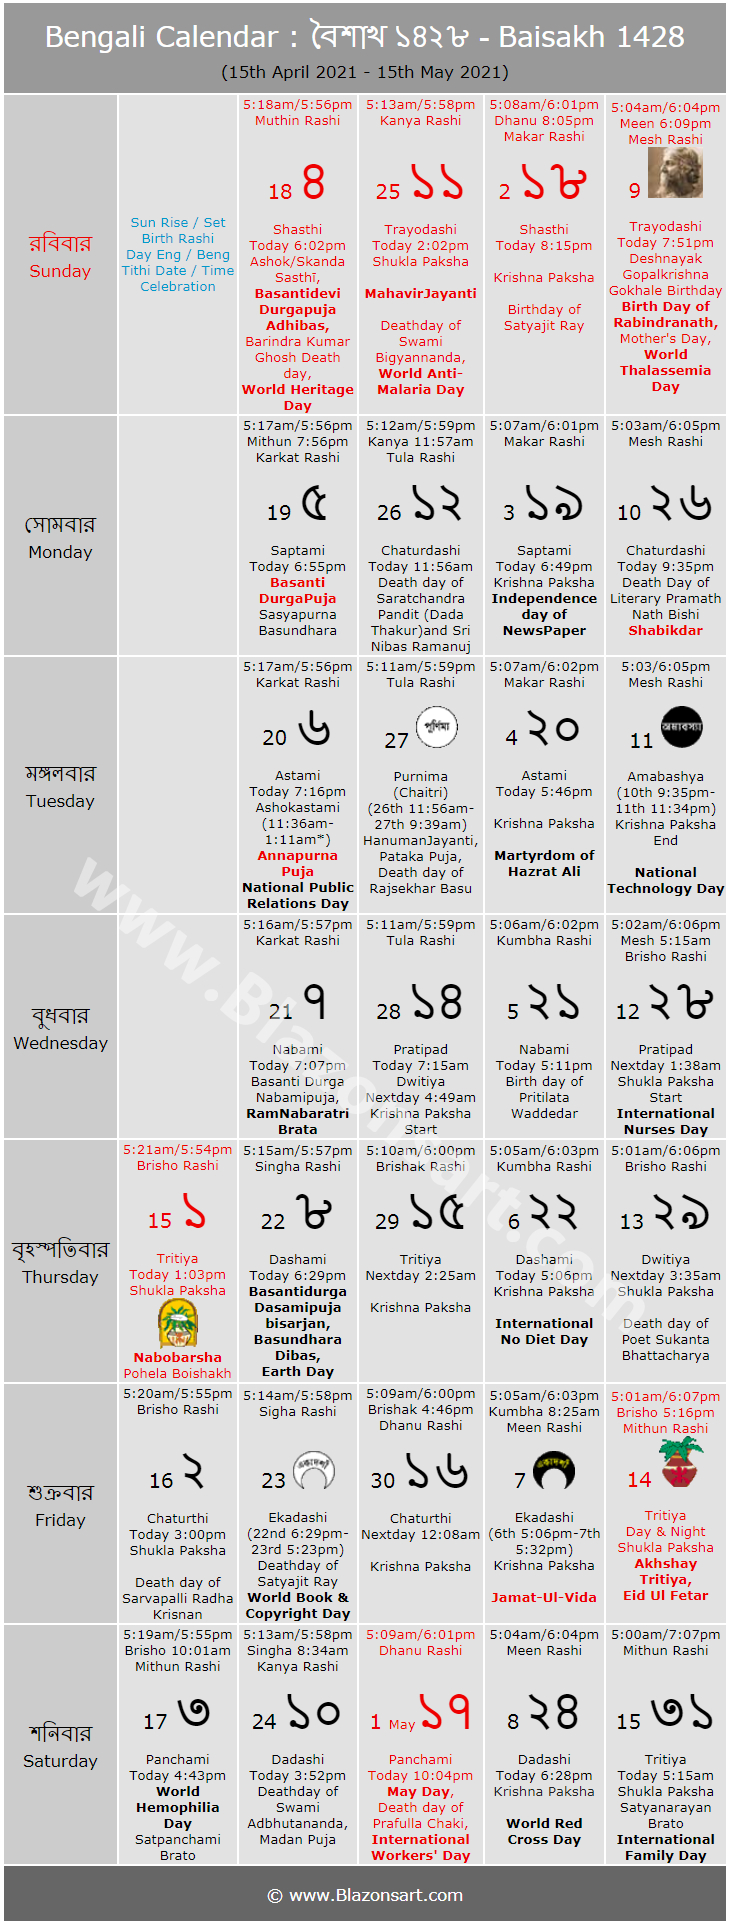 Bengali Calendar - Baisakh 1428 : বাংলা কালেন্ডার - বৈশাখ